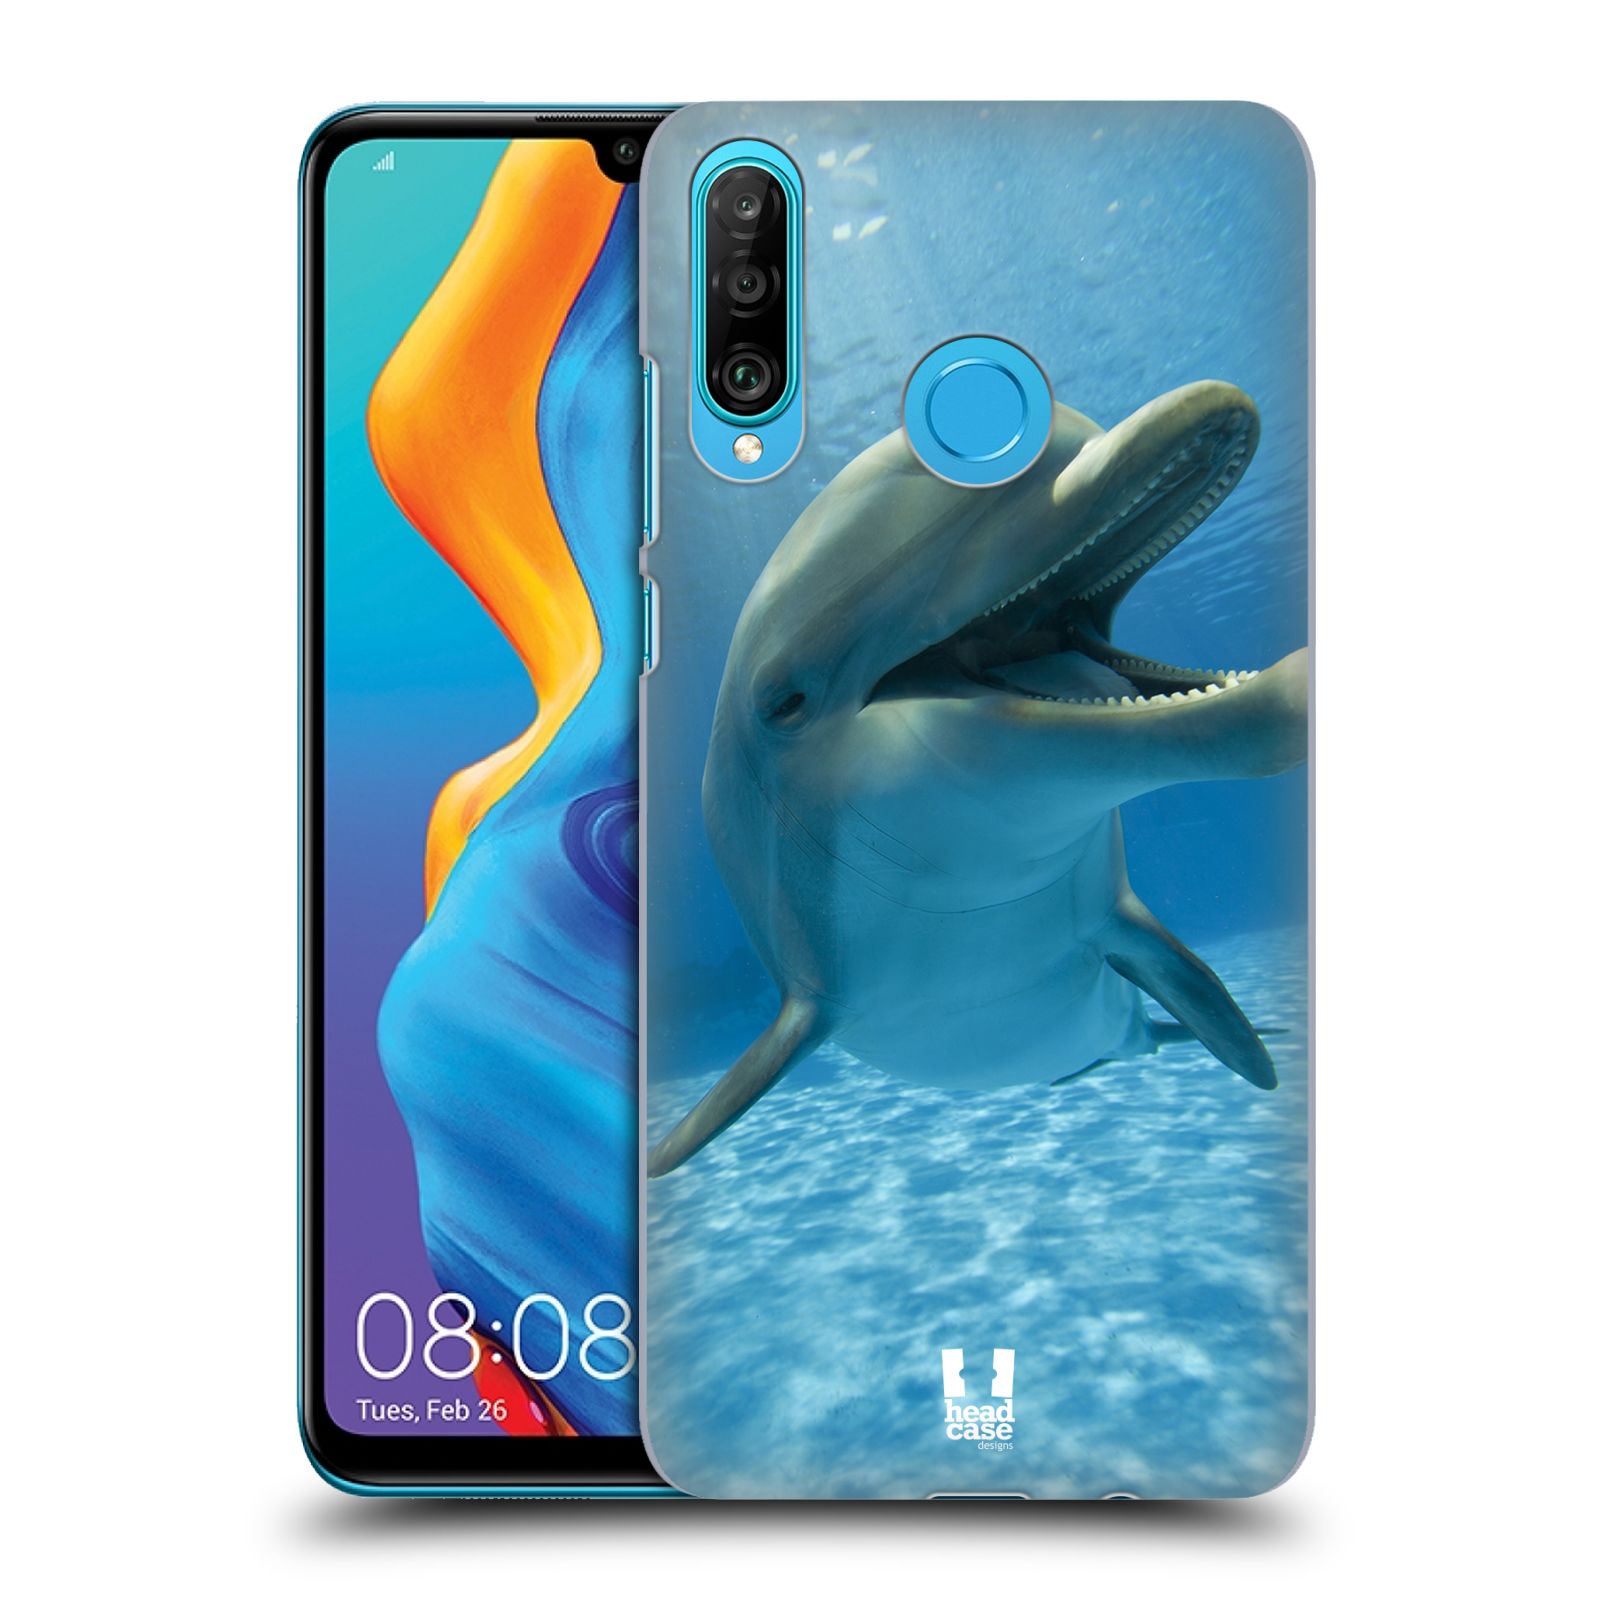 Zadní obal pro mobil Huawei P30 LITE - HEAD CASE - Svět zvířat delfín v moři